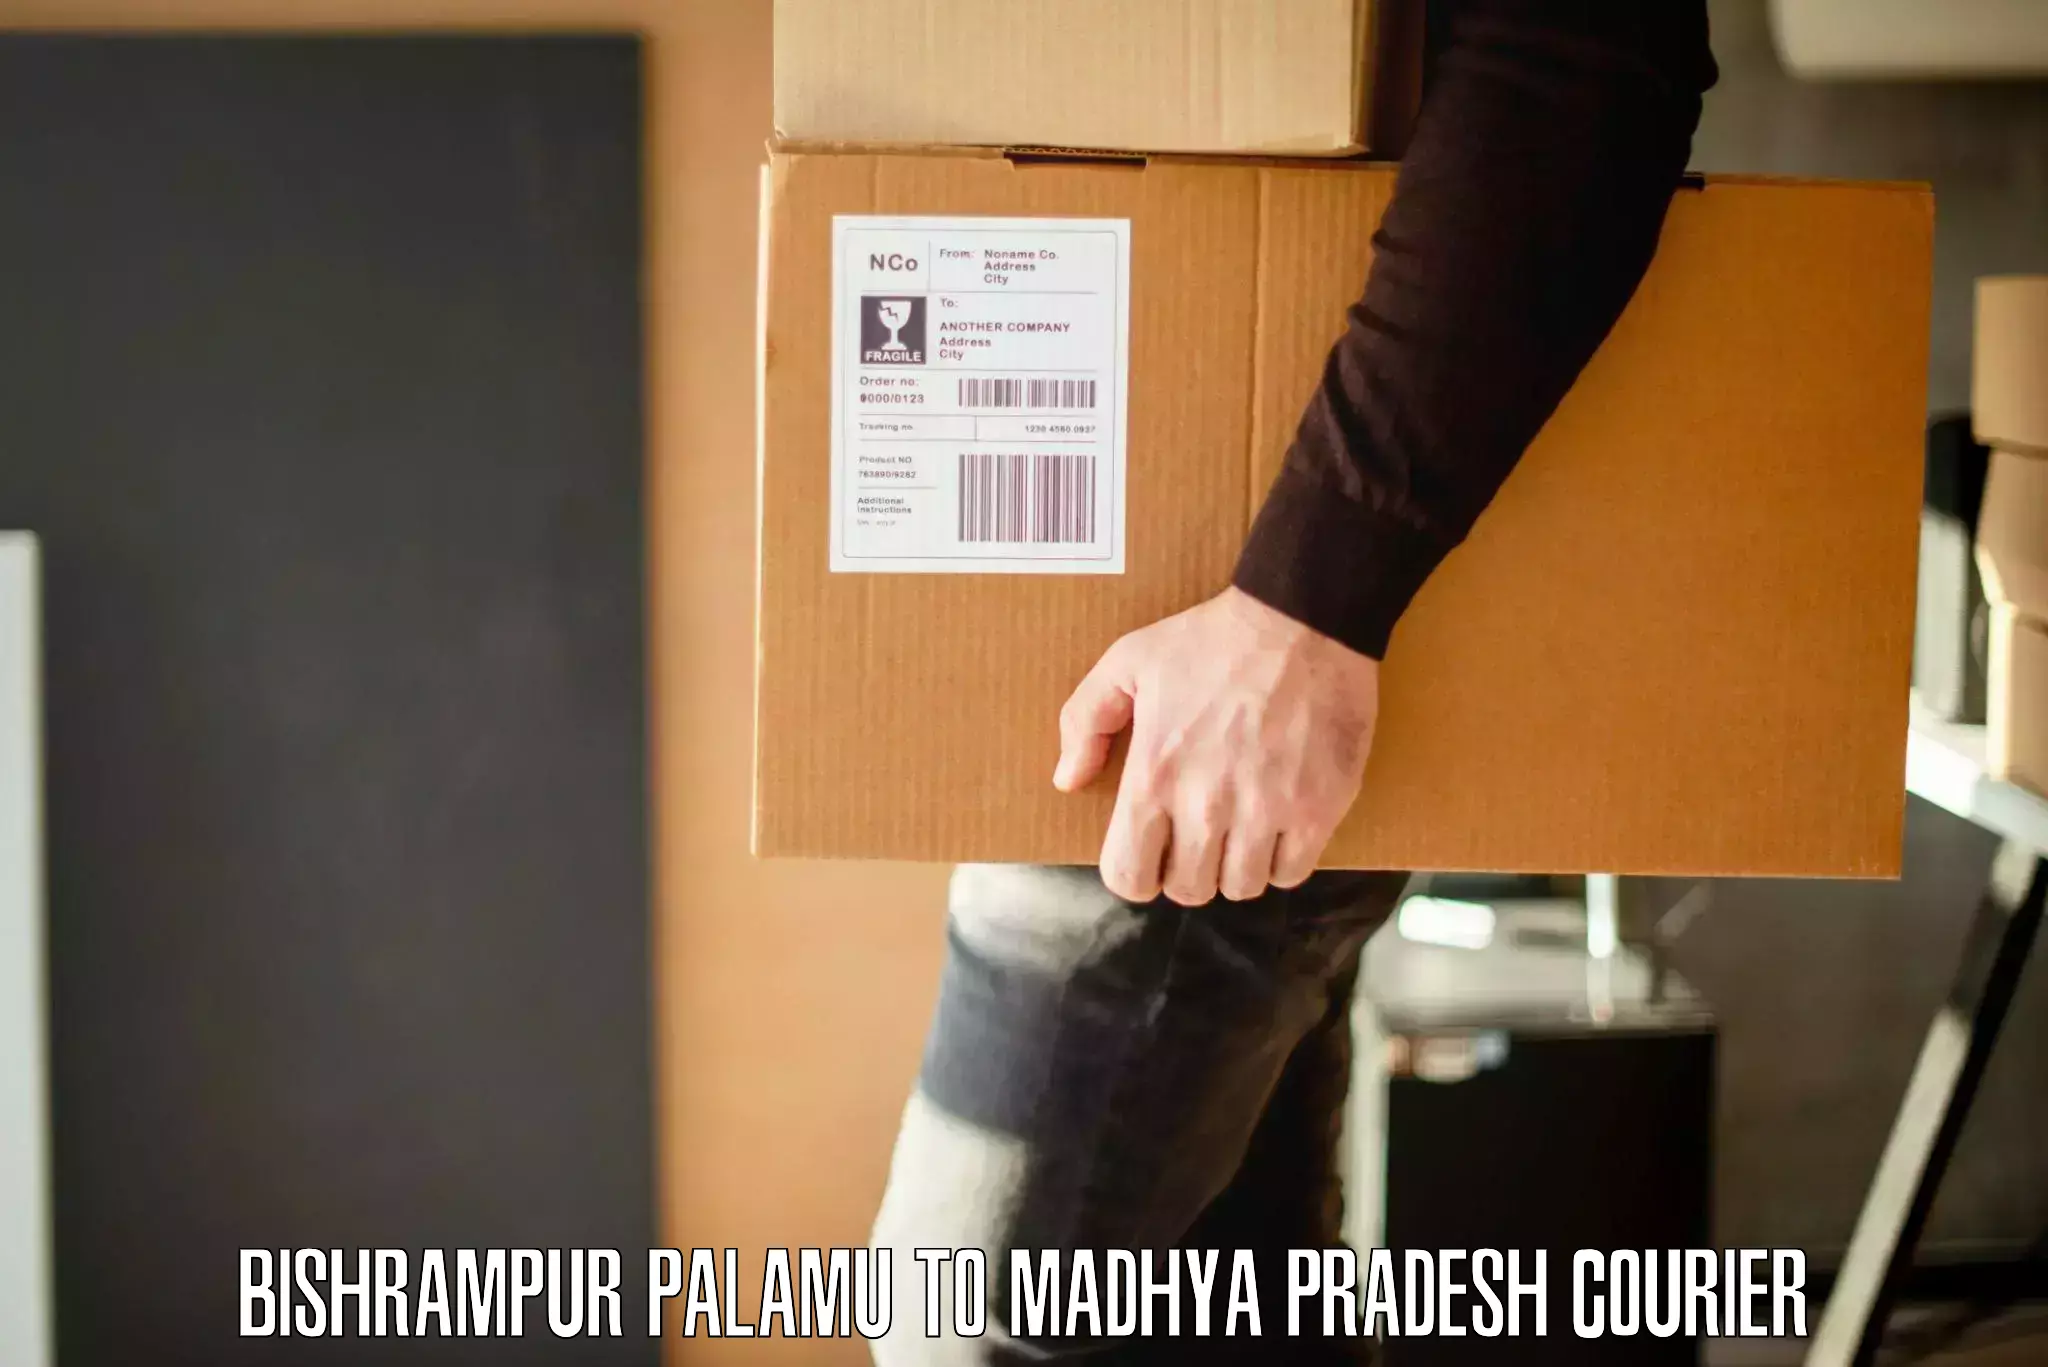 Nationwide furniture movers Bishrampur Palamu to Madhya Pradesh